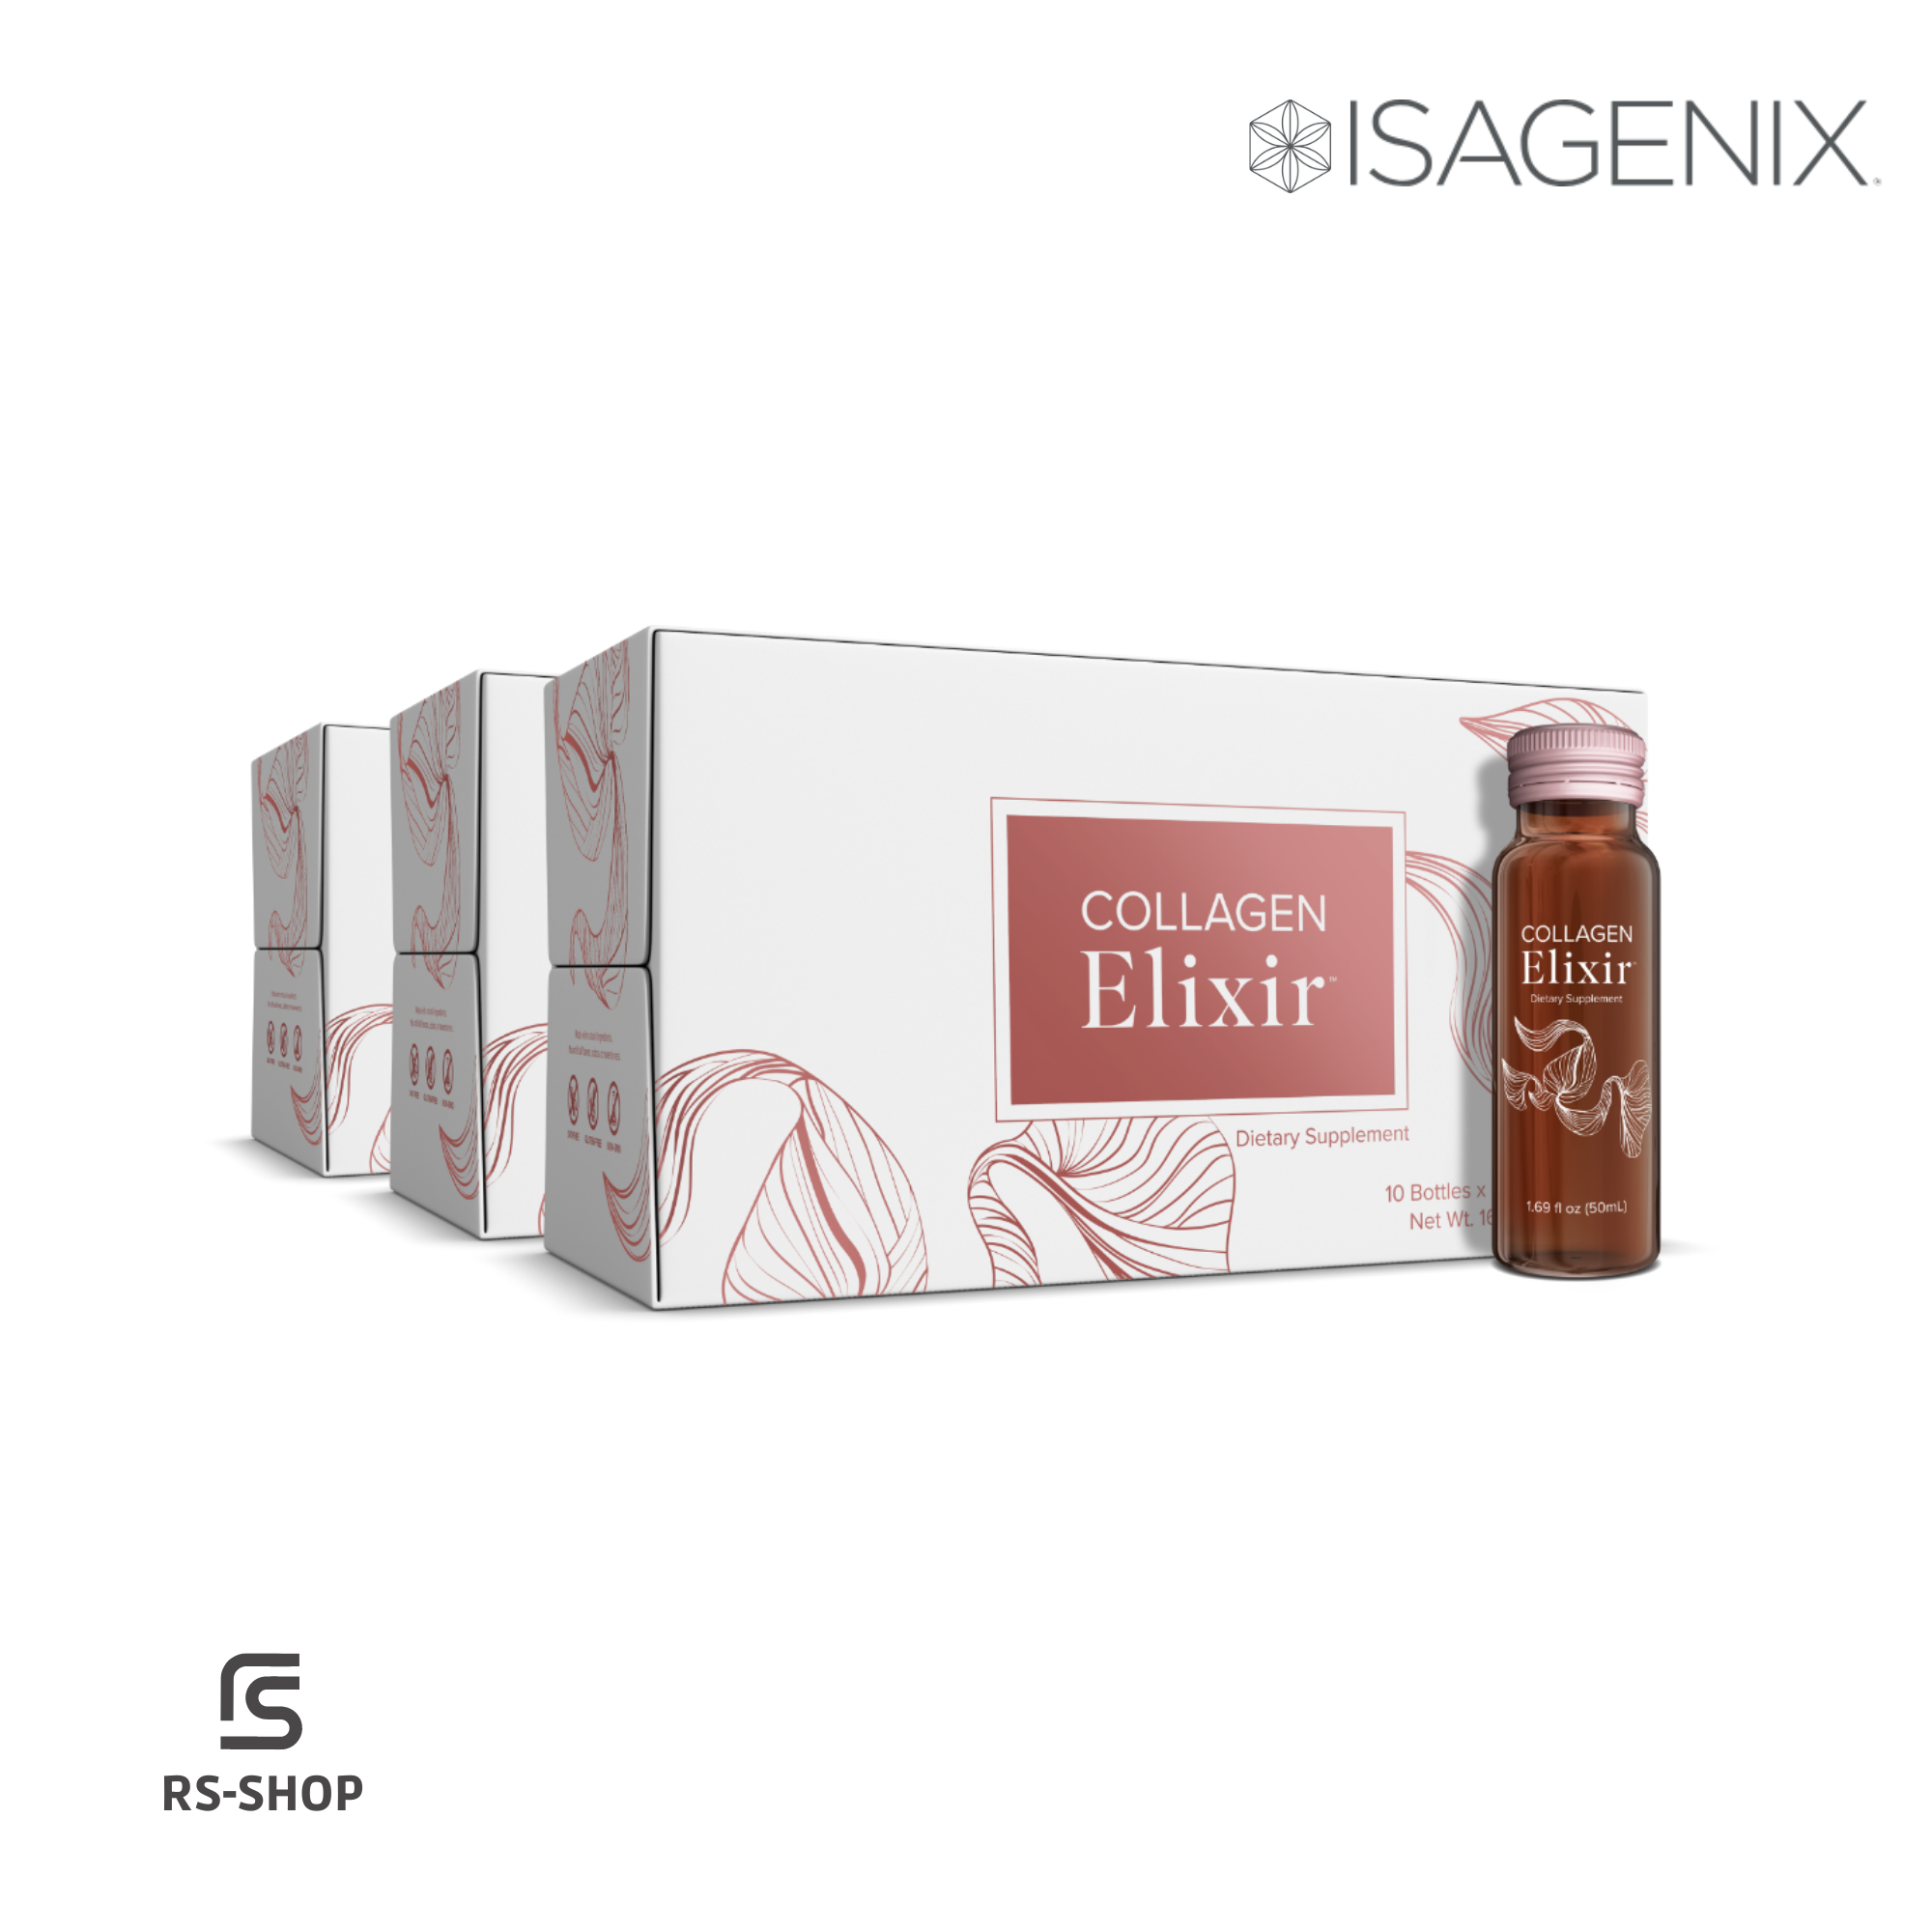 ISAGENIX - Collagen Elixir - 60 bottles